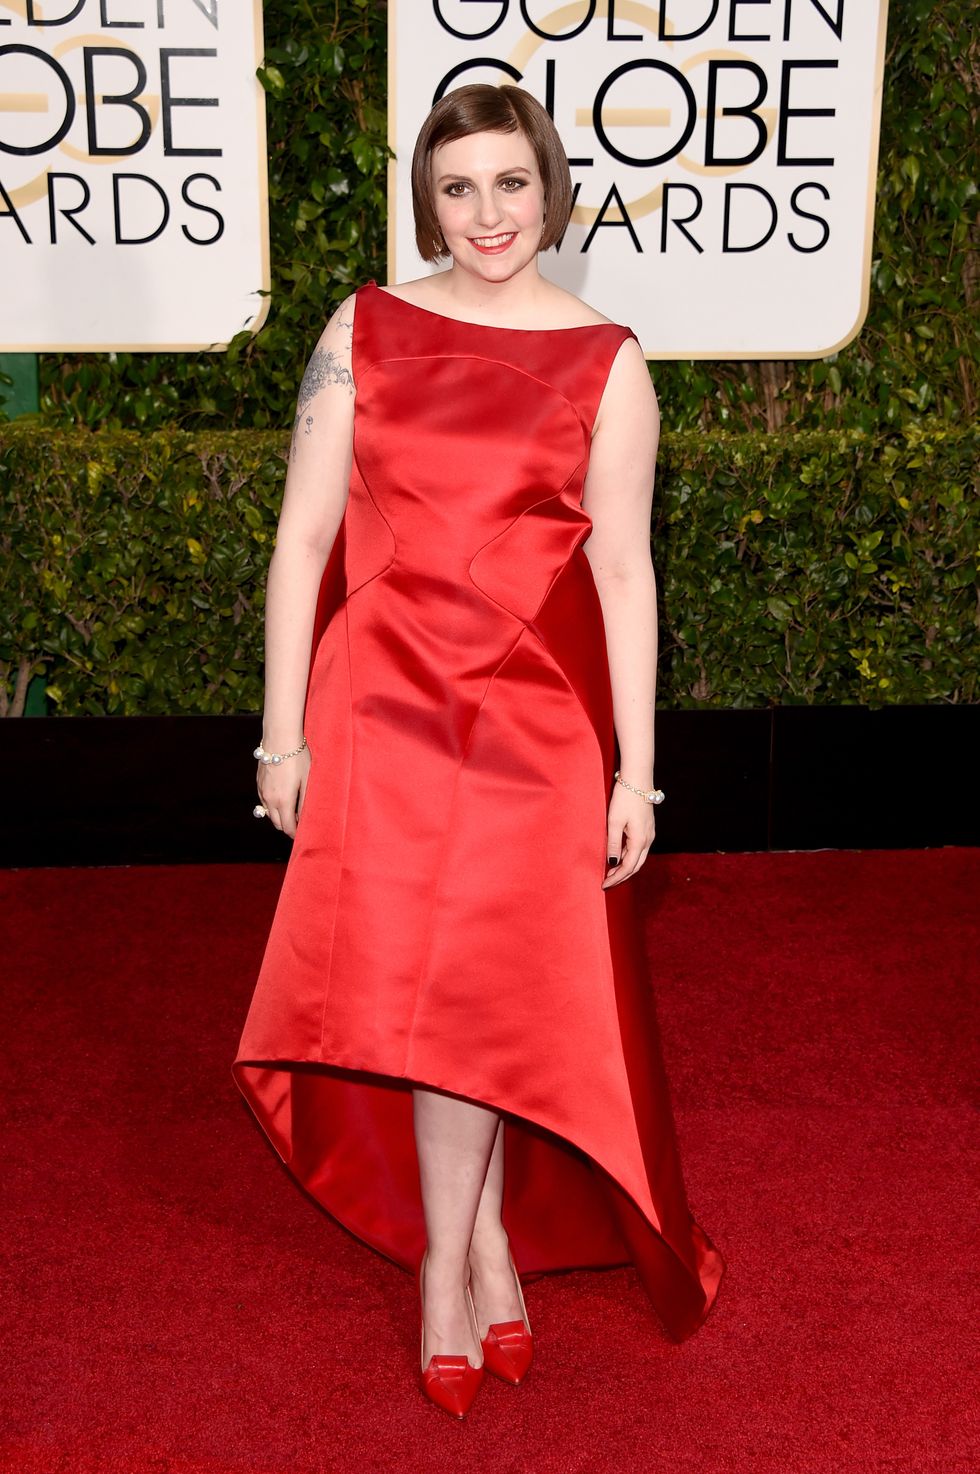 Lena Dunham at Golden Globes